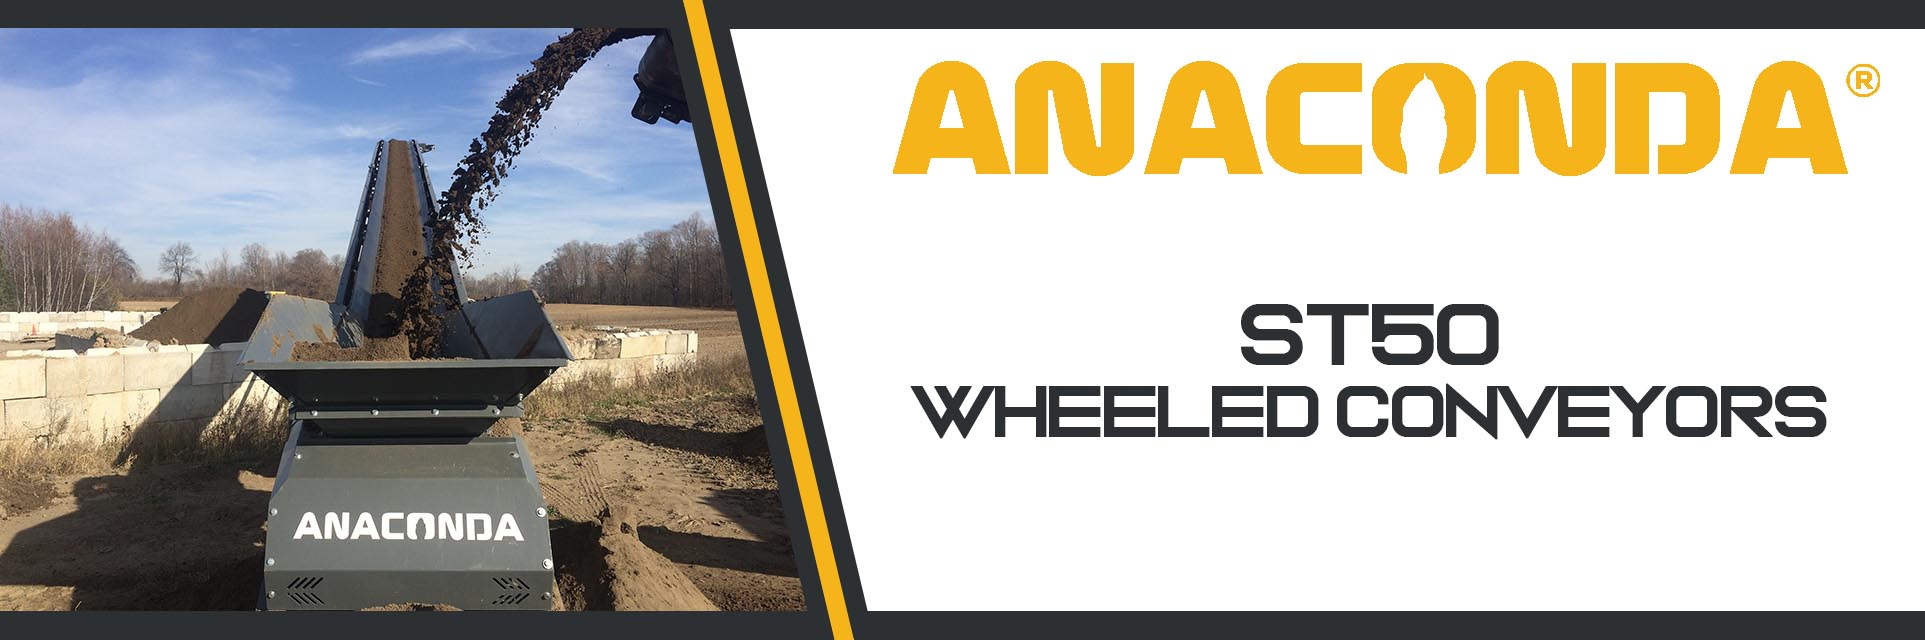 Anaconda ST50 Wheeled Stacker